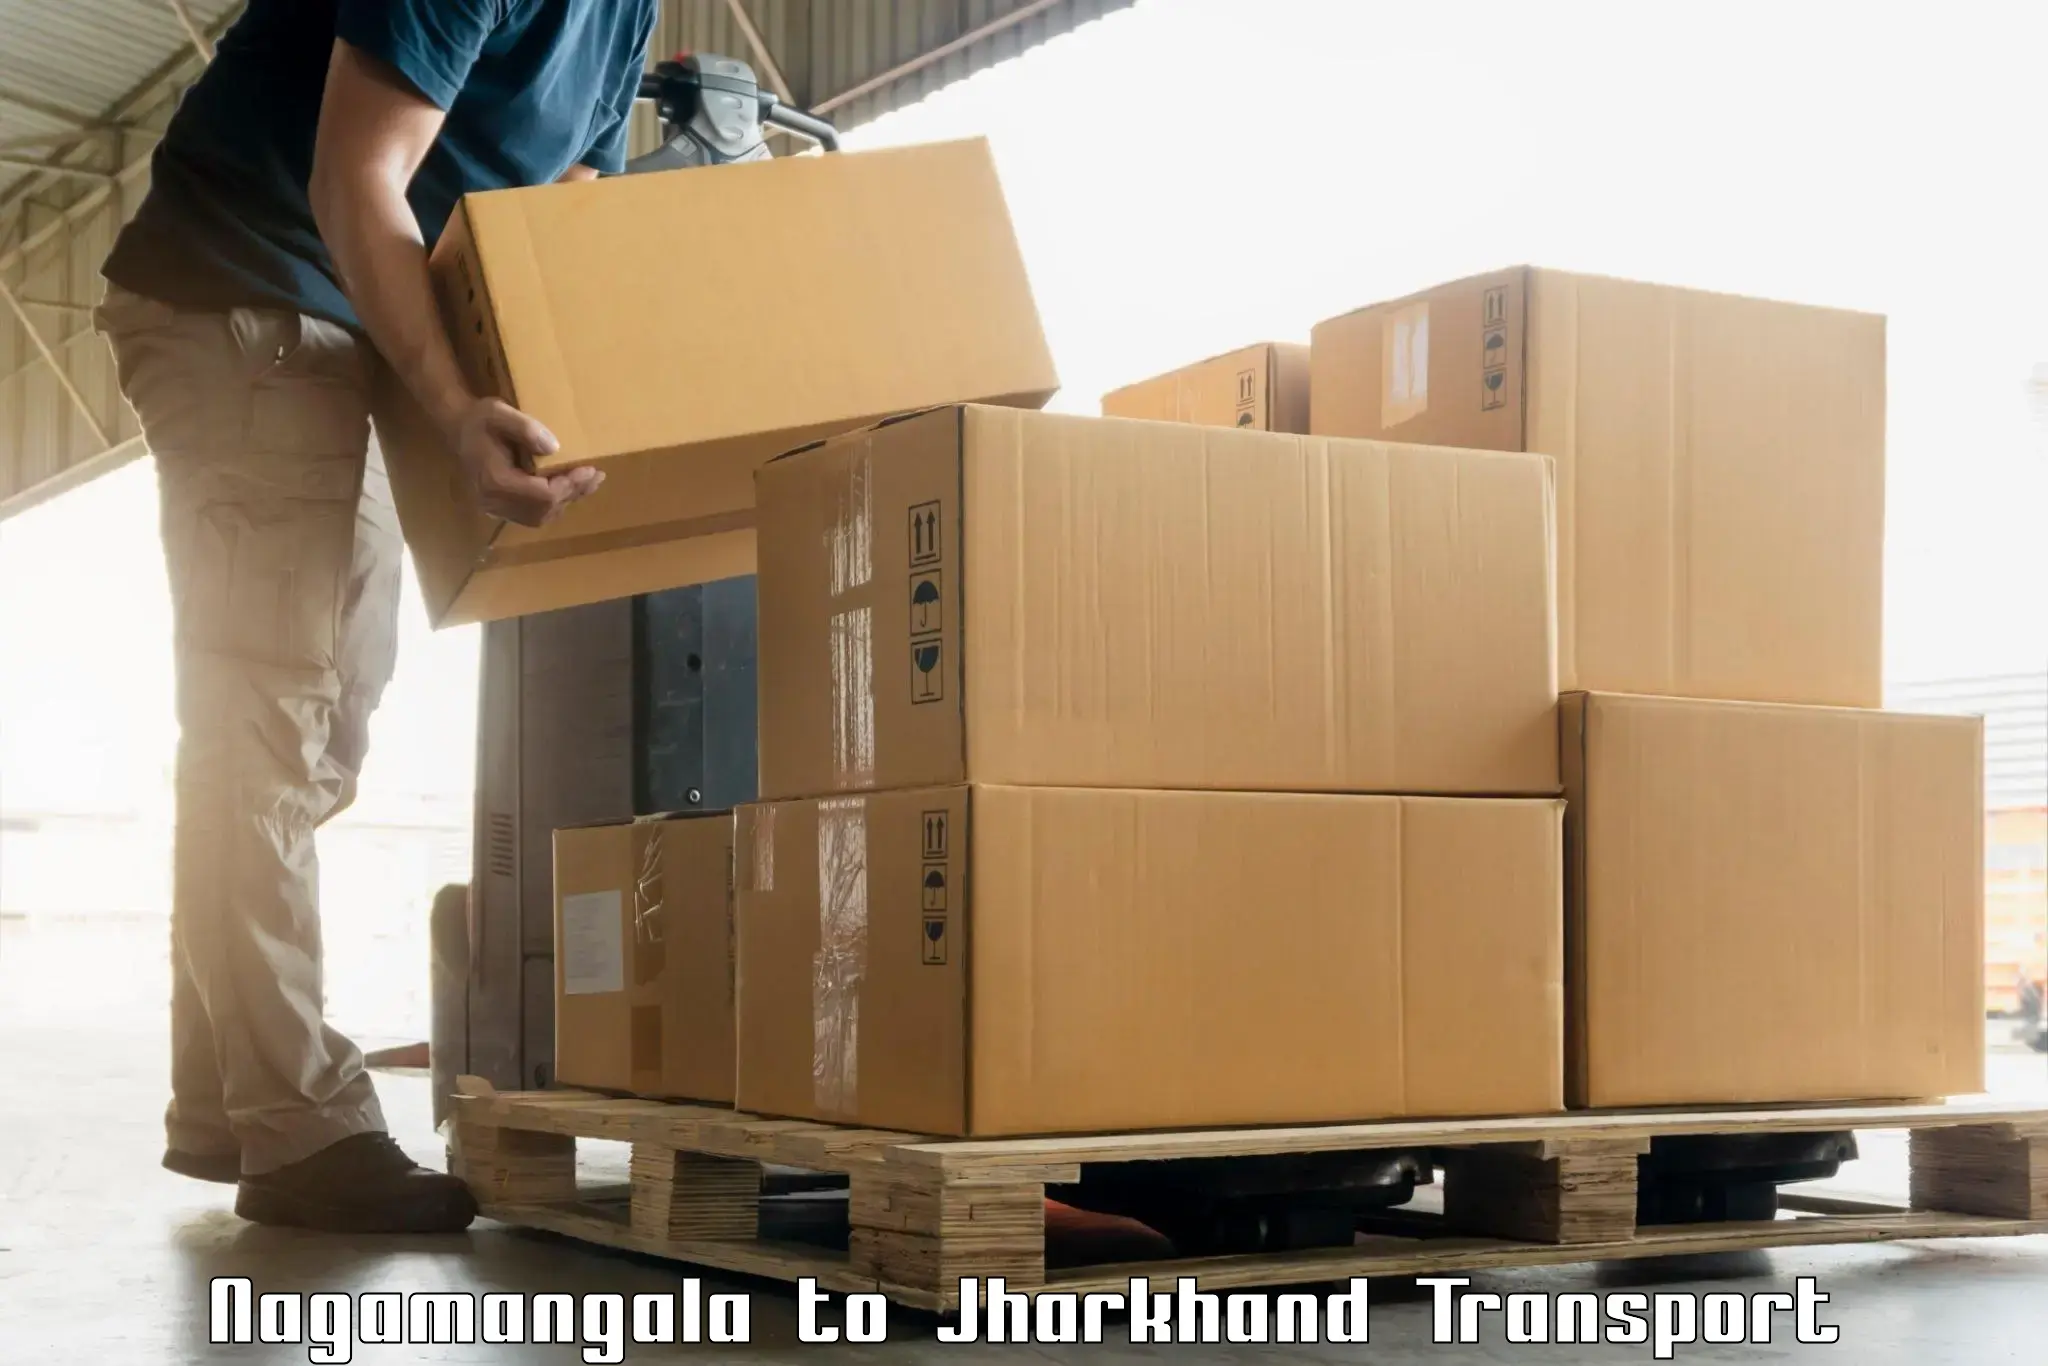 Vehicle transport services Nagamangala to Simdega